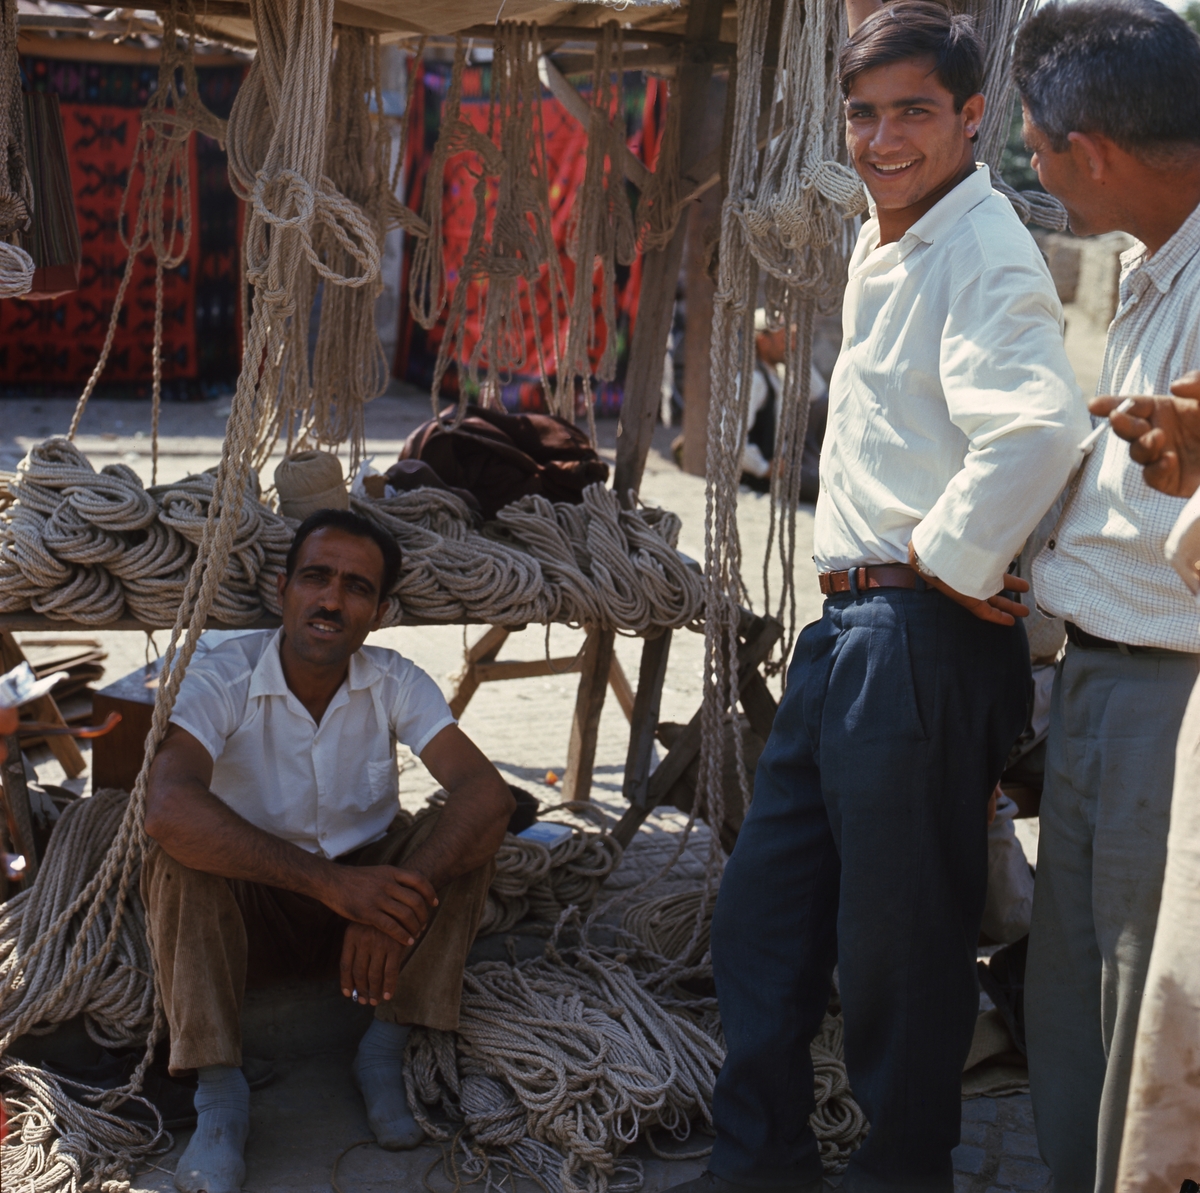 På marken framför ett försäljningsstånd med rep sitter en man på marken. Bredvid honom står två män. En av dem ler in i kameran.